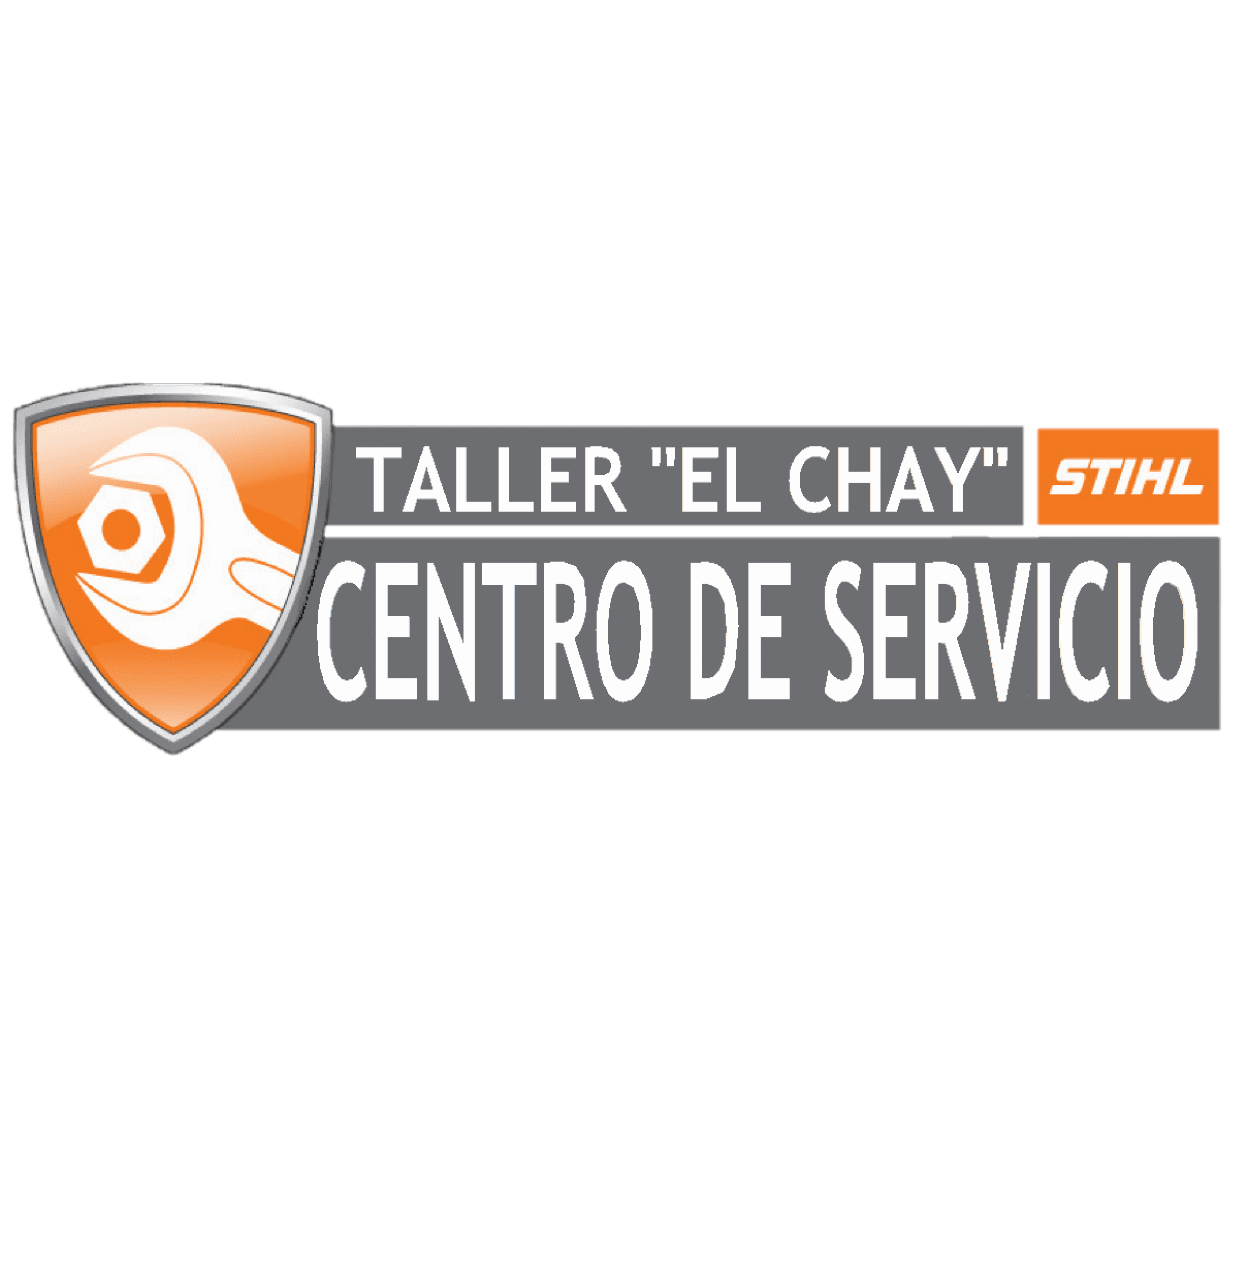 Taller "El Chay"